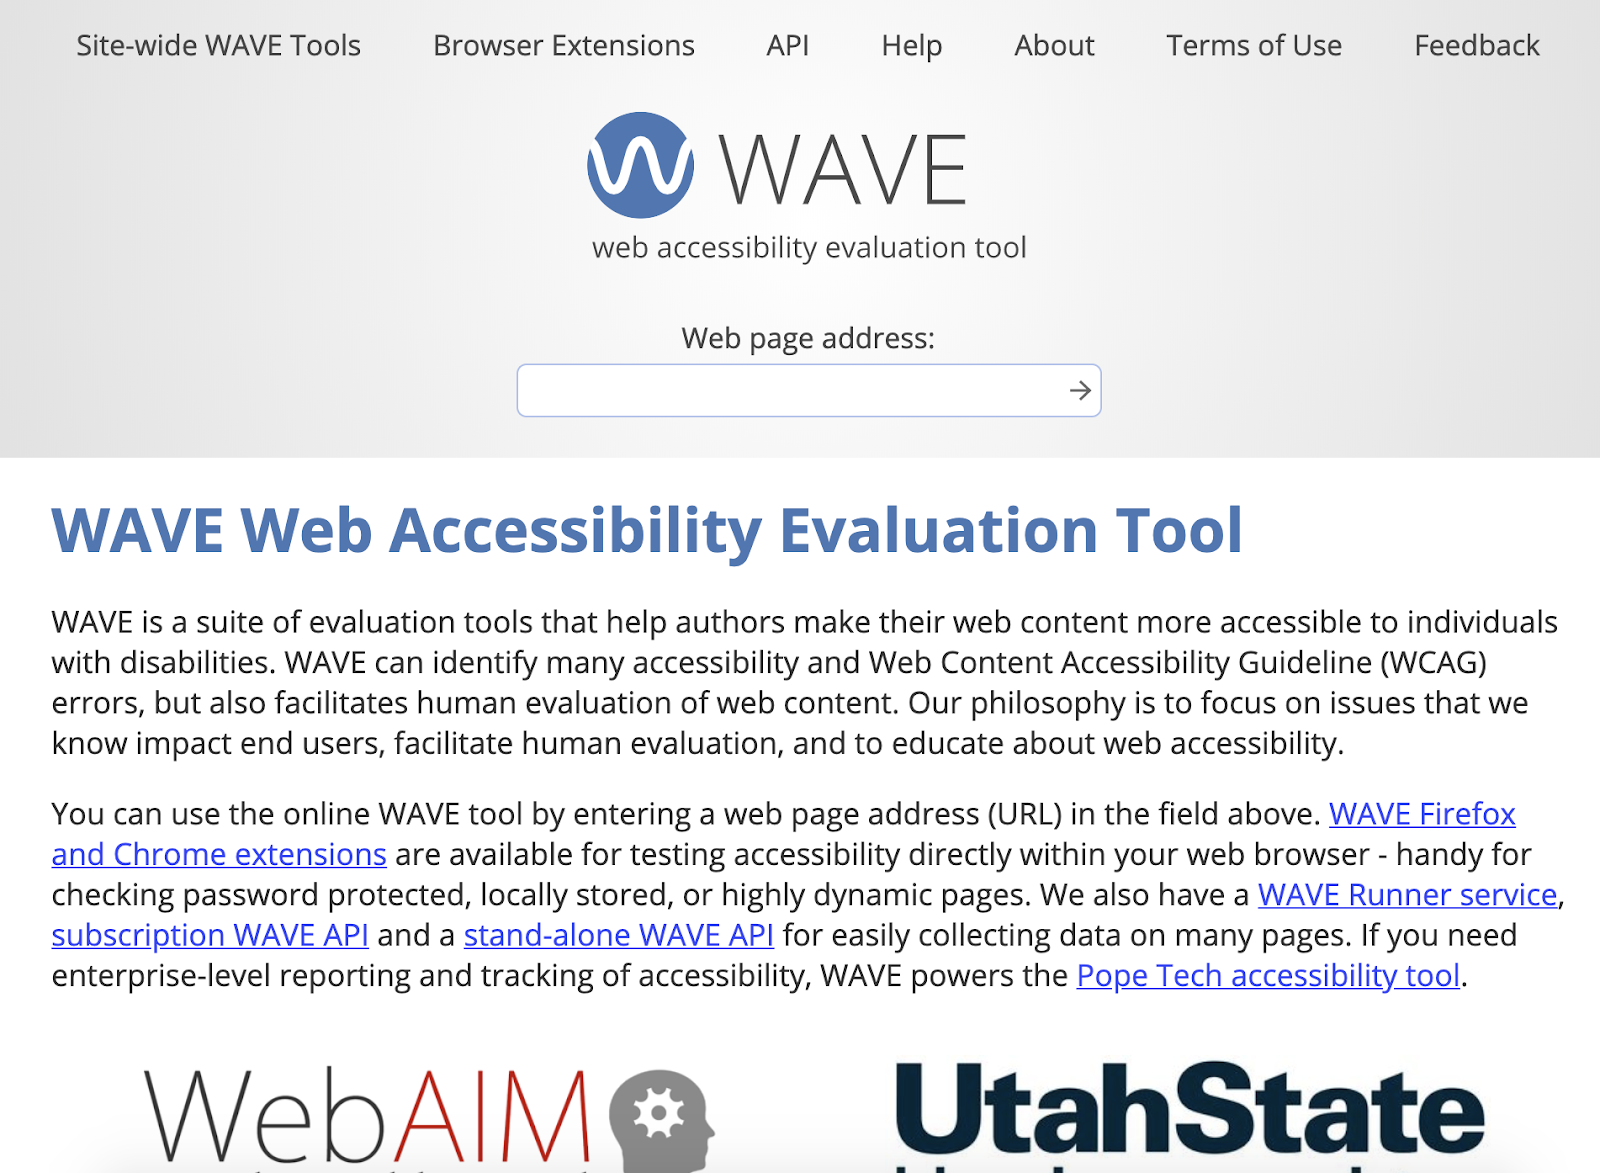 Accessibility. как сделать приложение доступным для пользователей с ограниченными возможностями / хабр